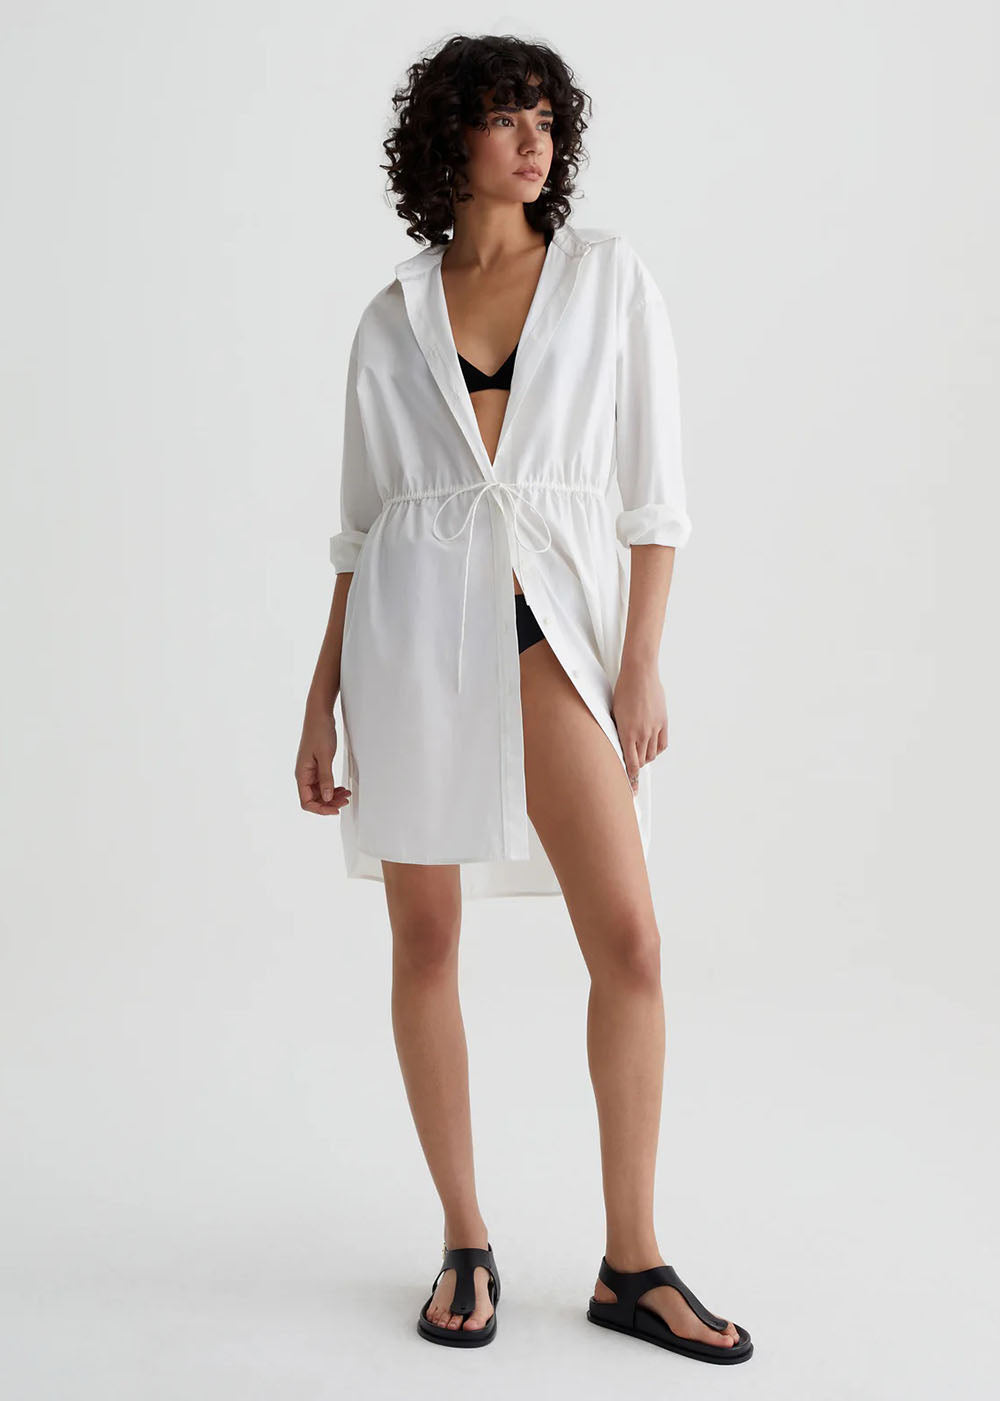 Jolie Shirt Dress - Pearl White - AG Jeans Canada - Danali - ECP6290PLWH